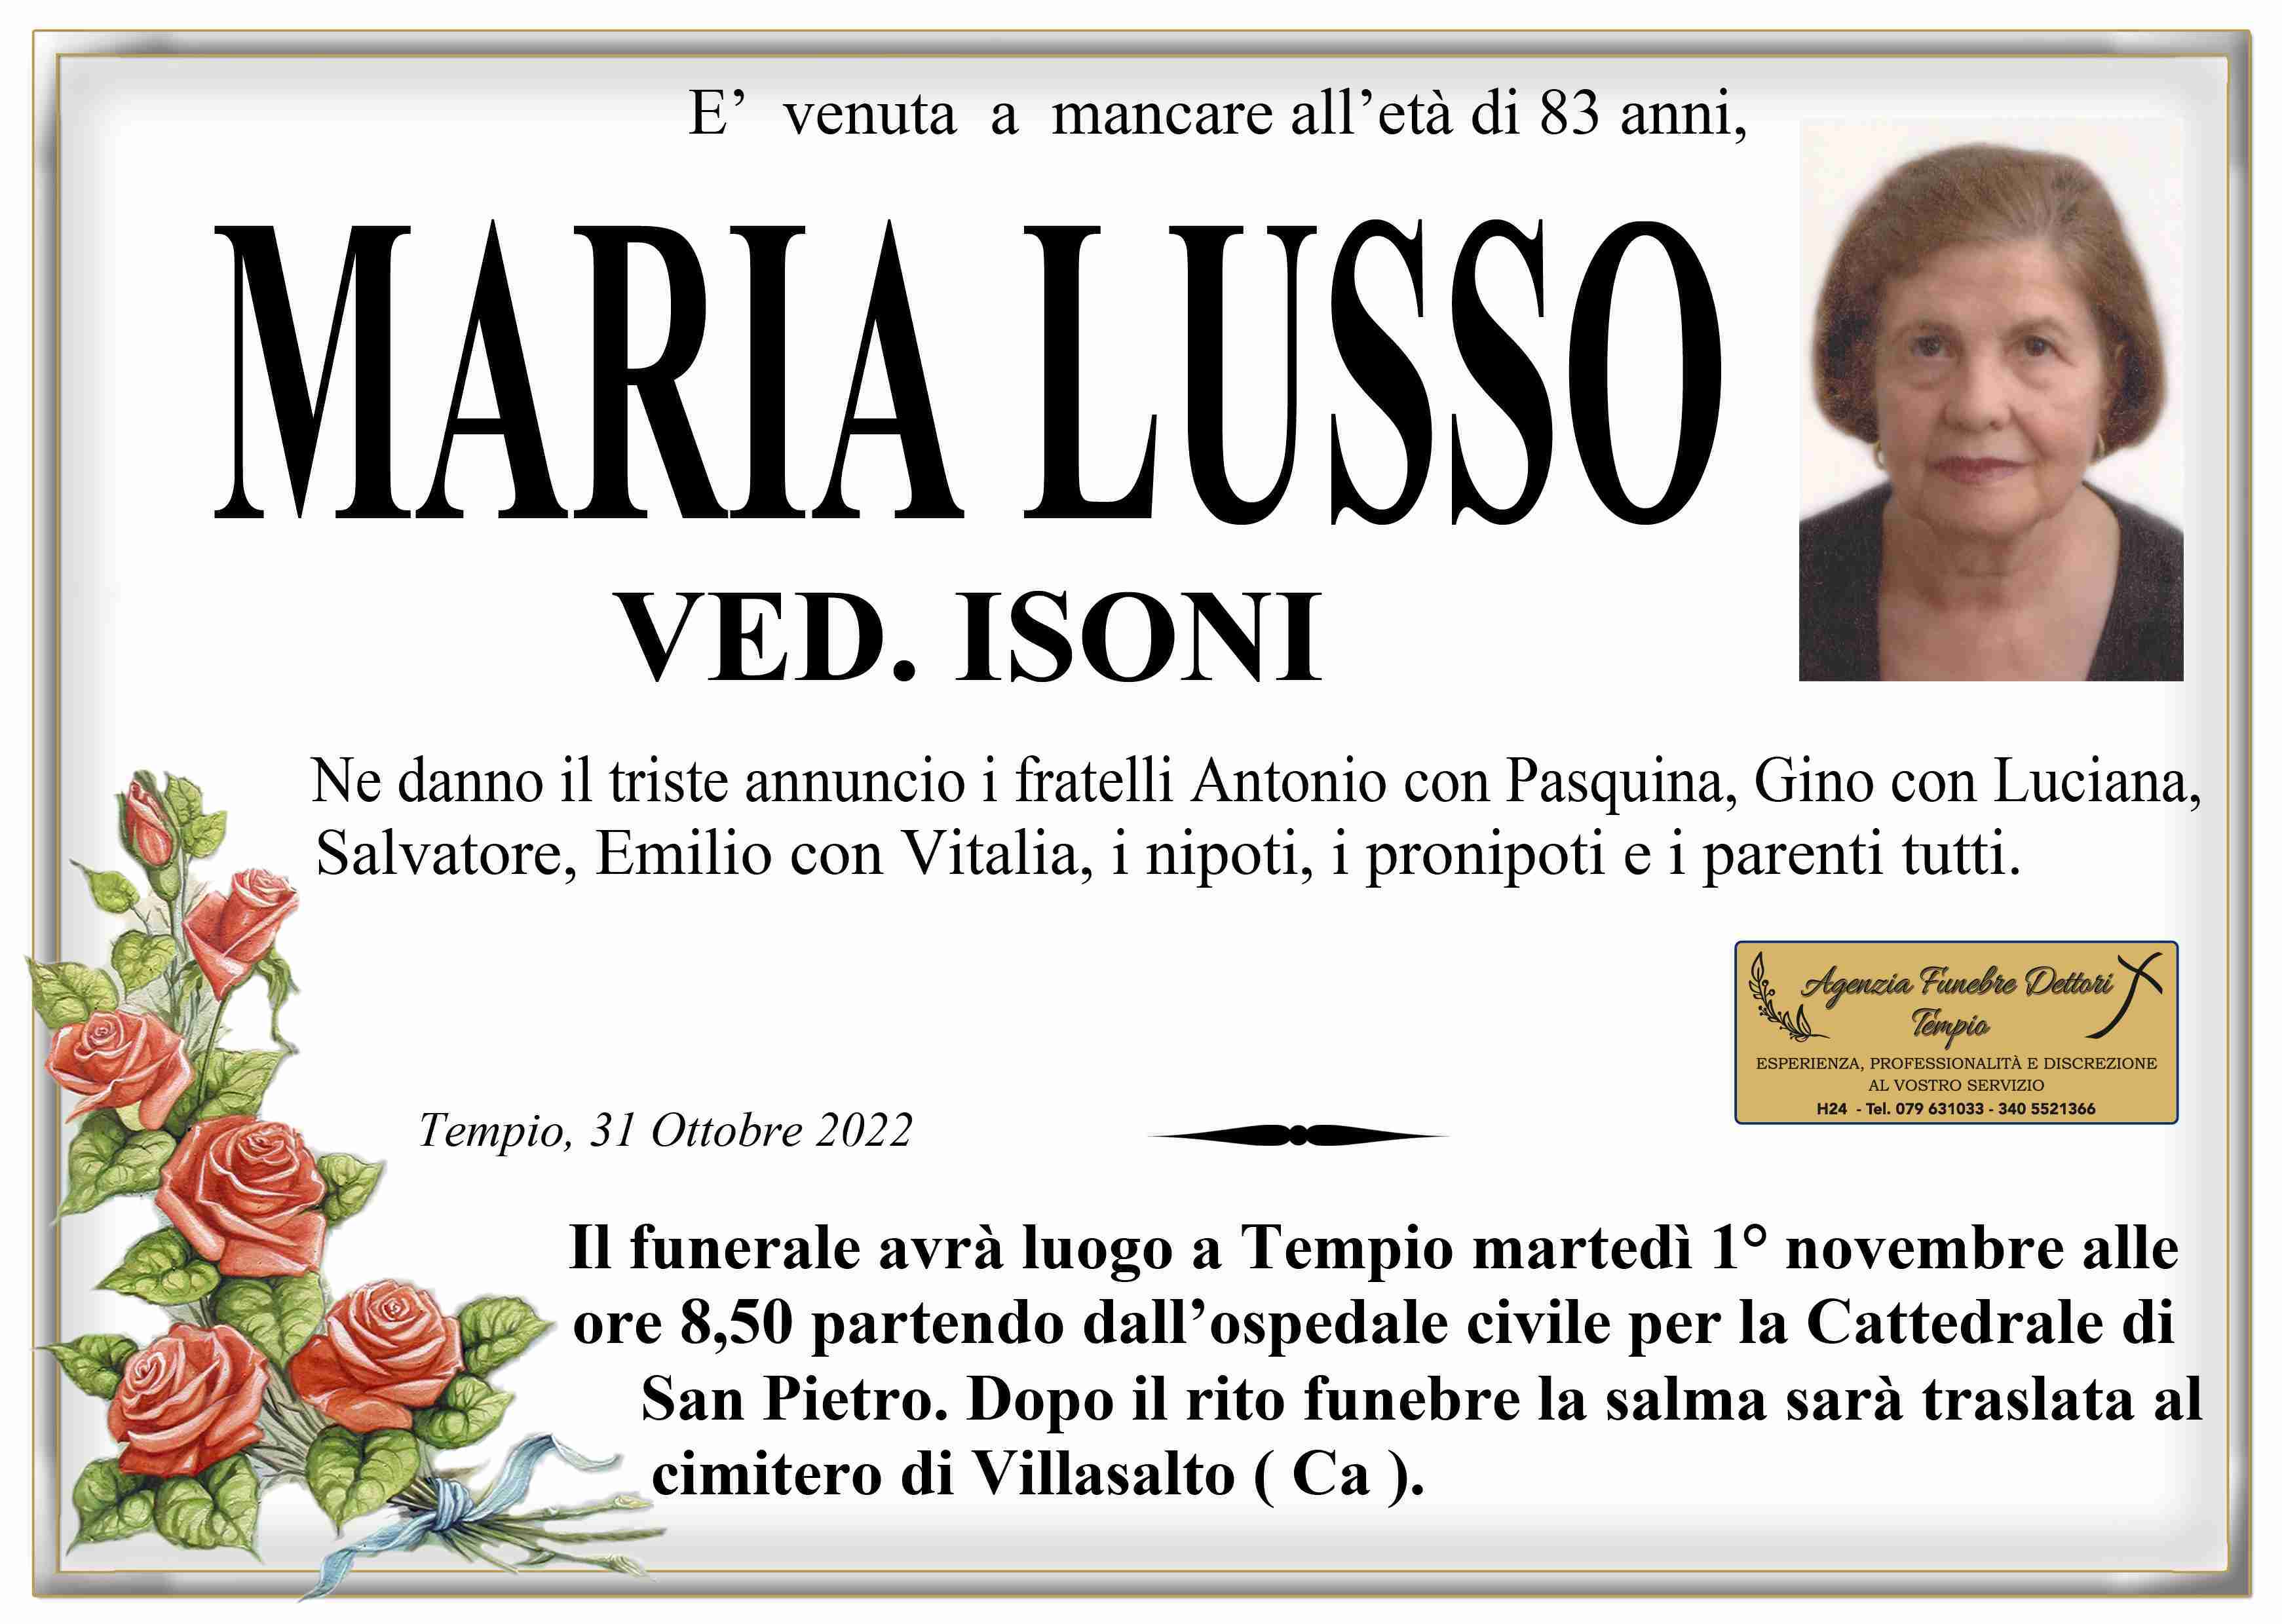 Maria Lusso